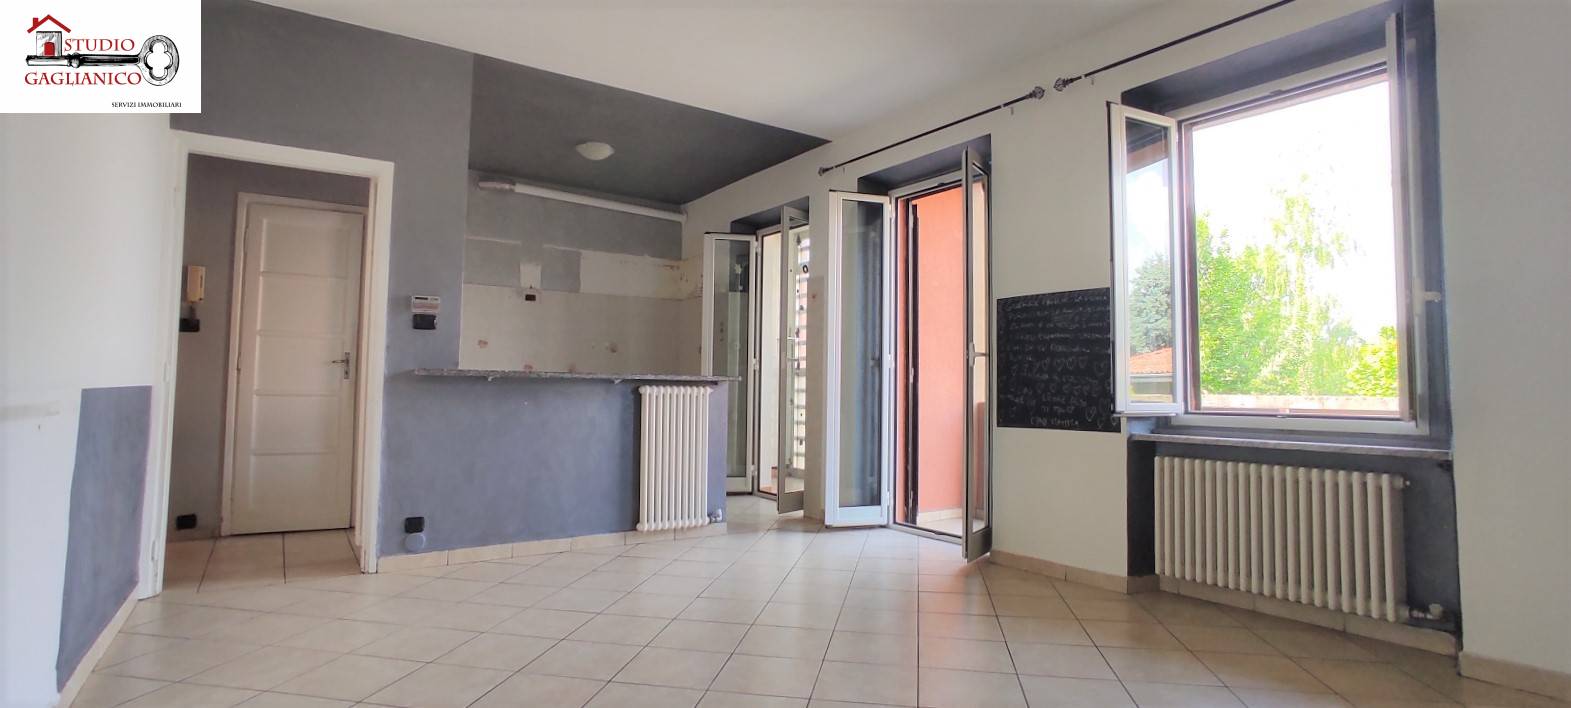 Appartamento in vendita a Sandigliano, 5 locali, prezzo € 59.000 | CambioCasa.it